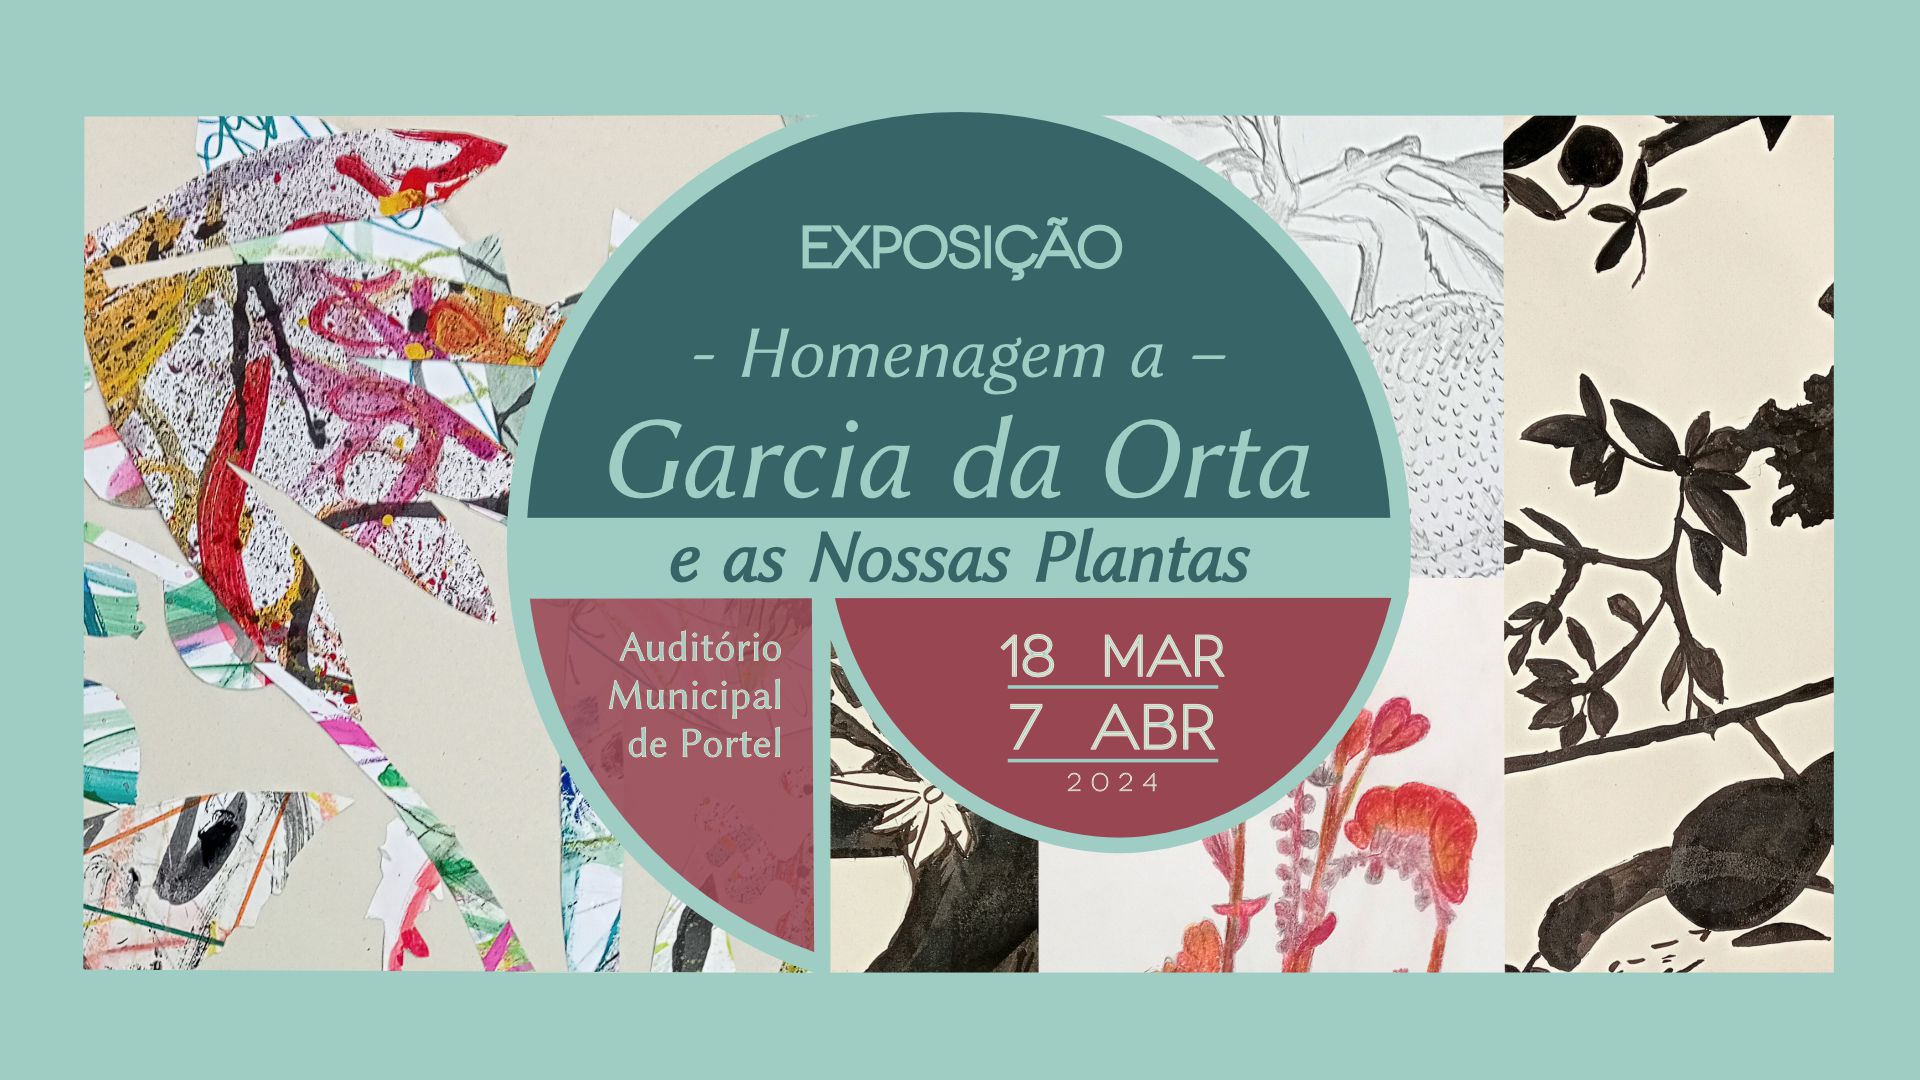 Exposição Homenagem a Garcia da Orta e as Nossas Plantas